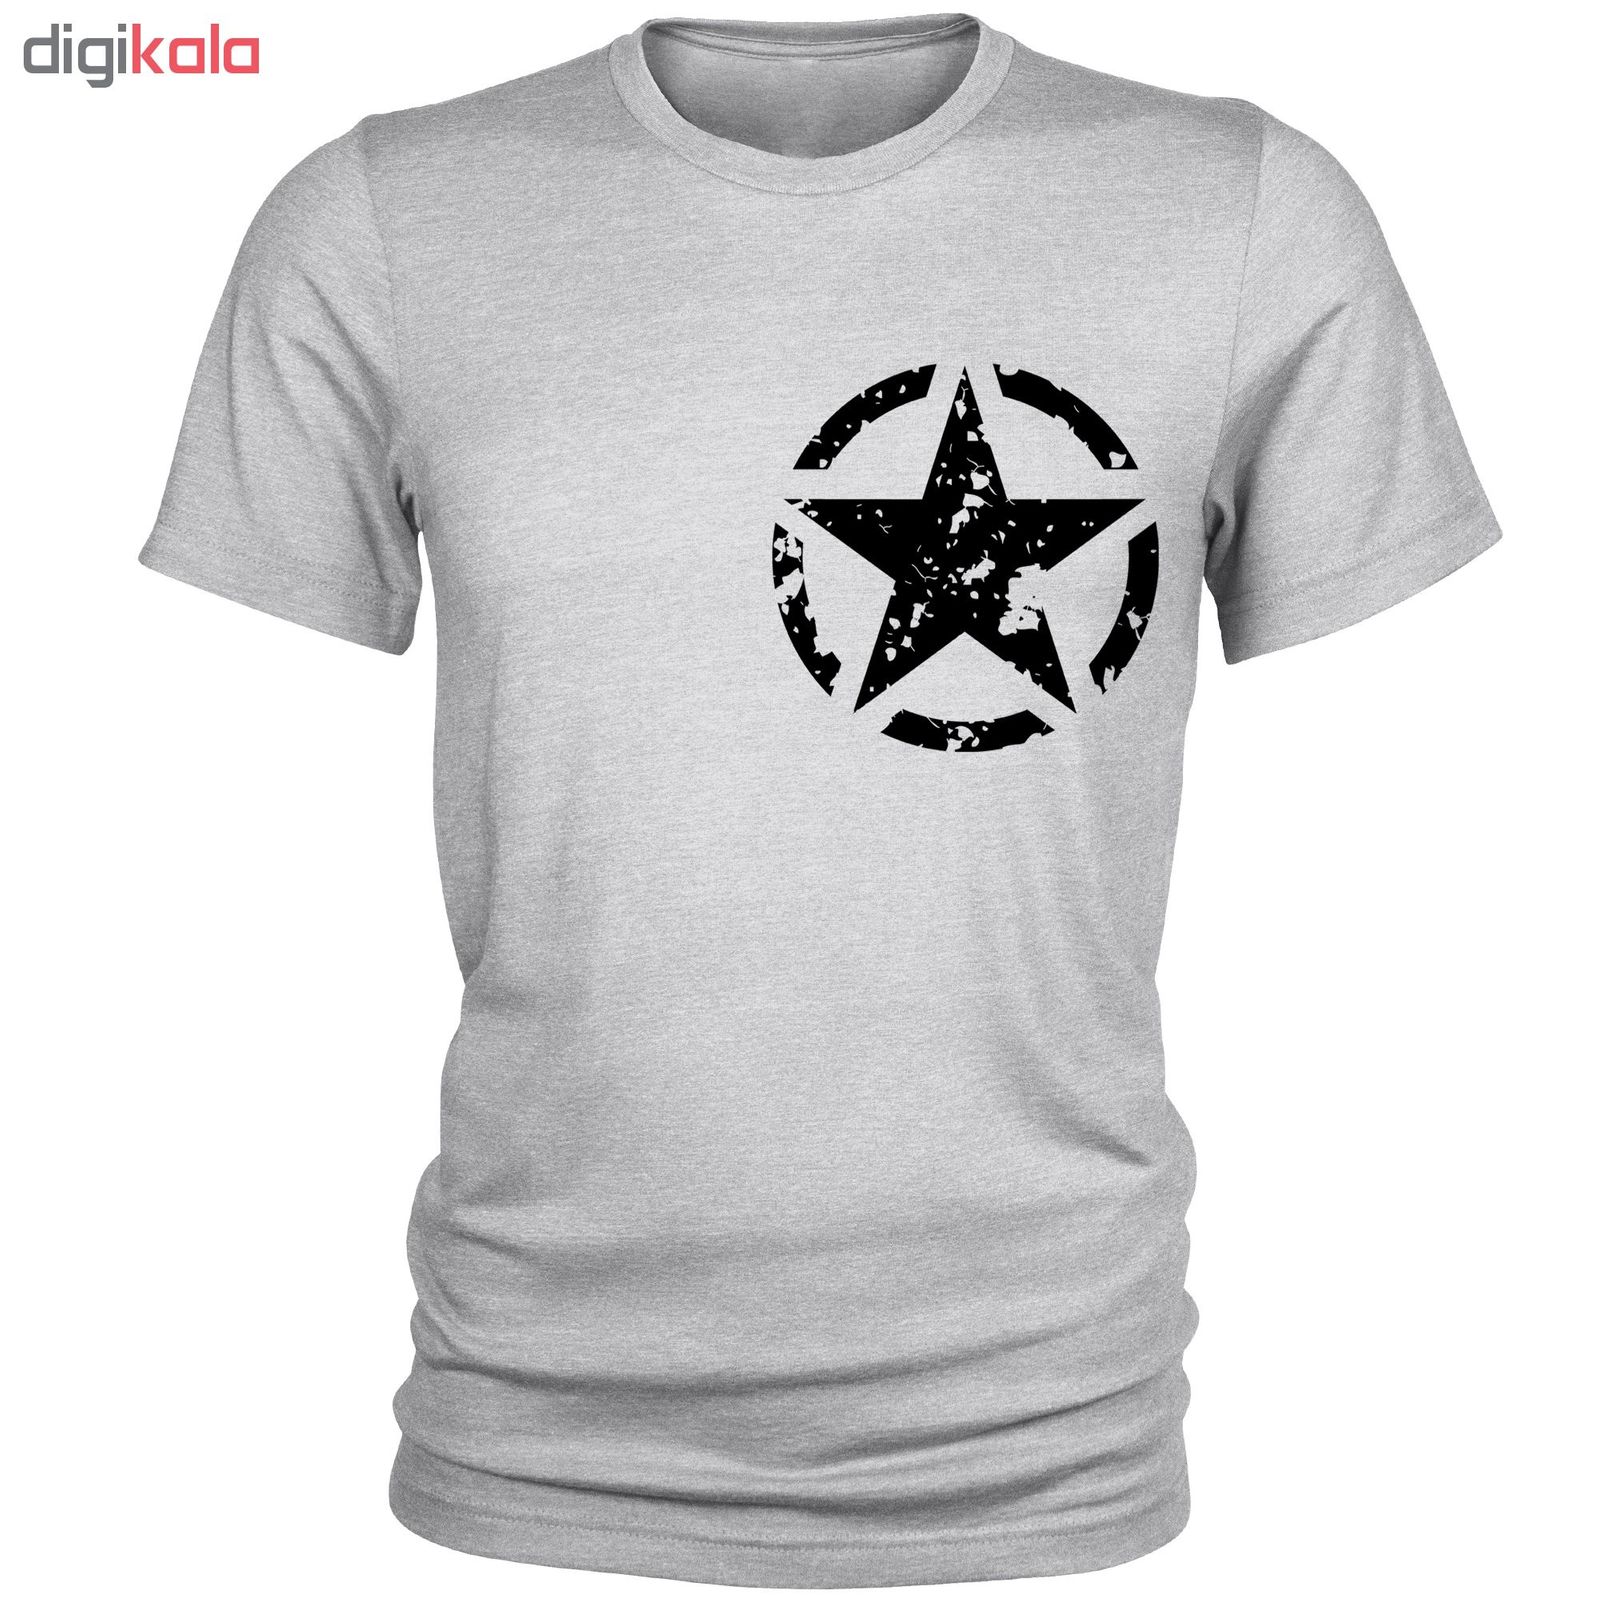 تی شرت مردانه طرح ستاره کد B84